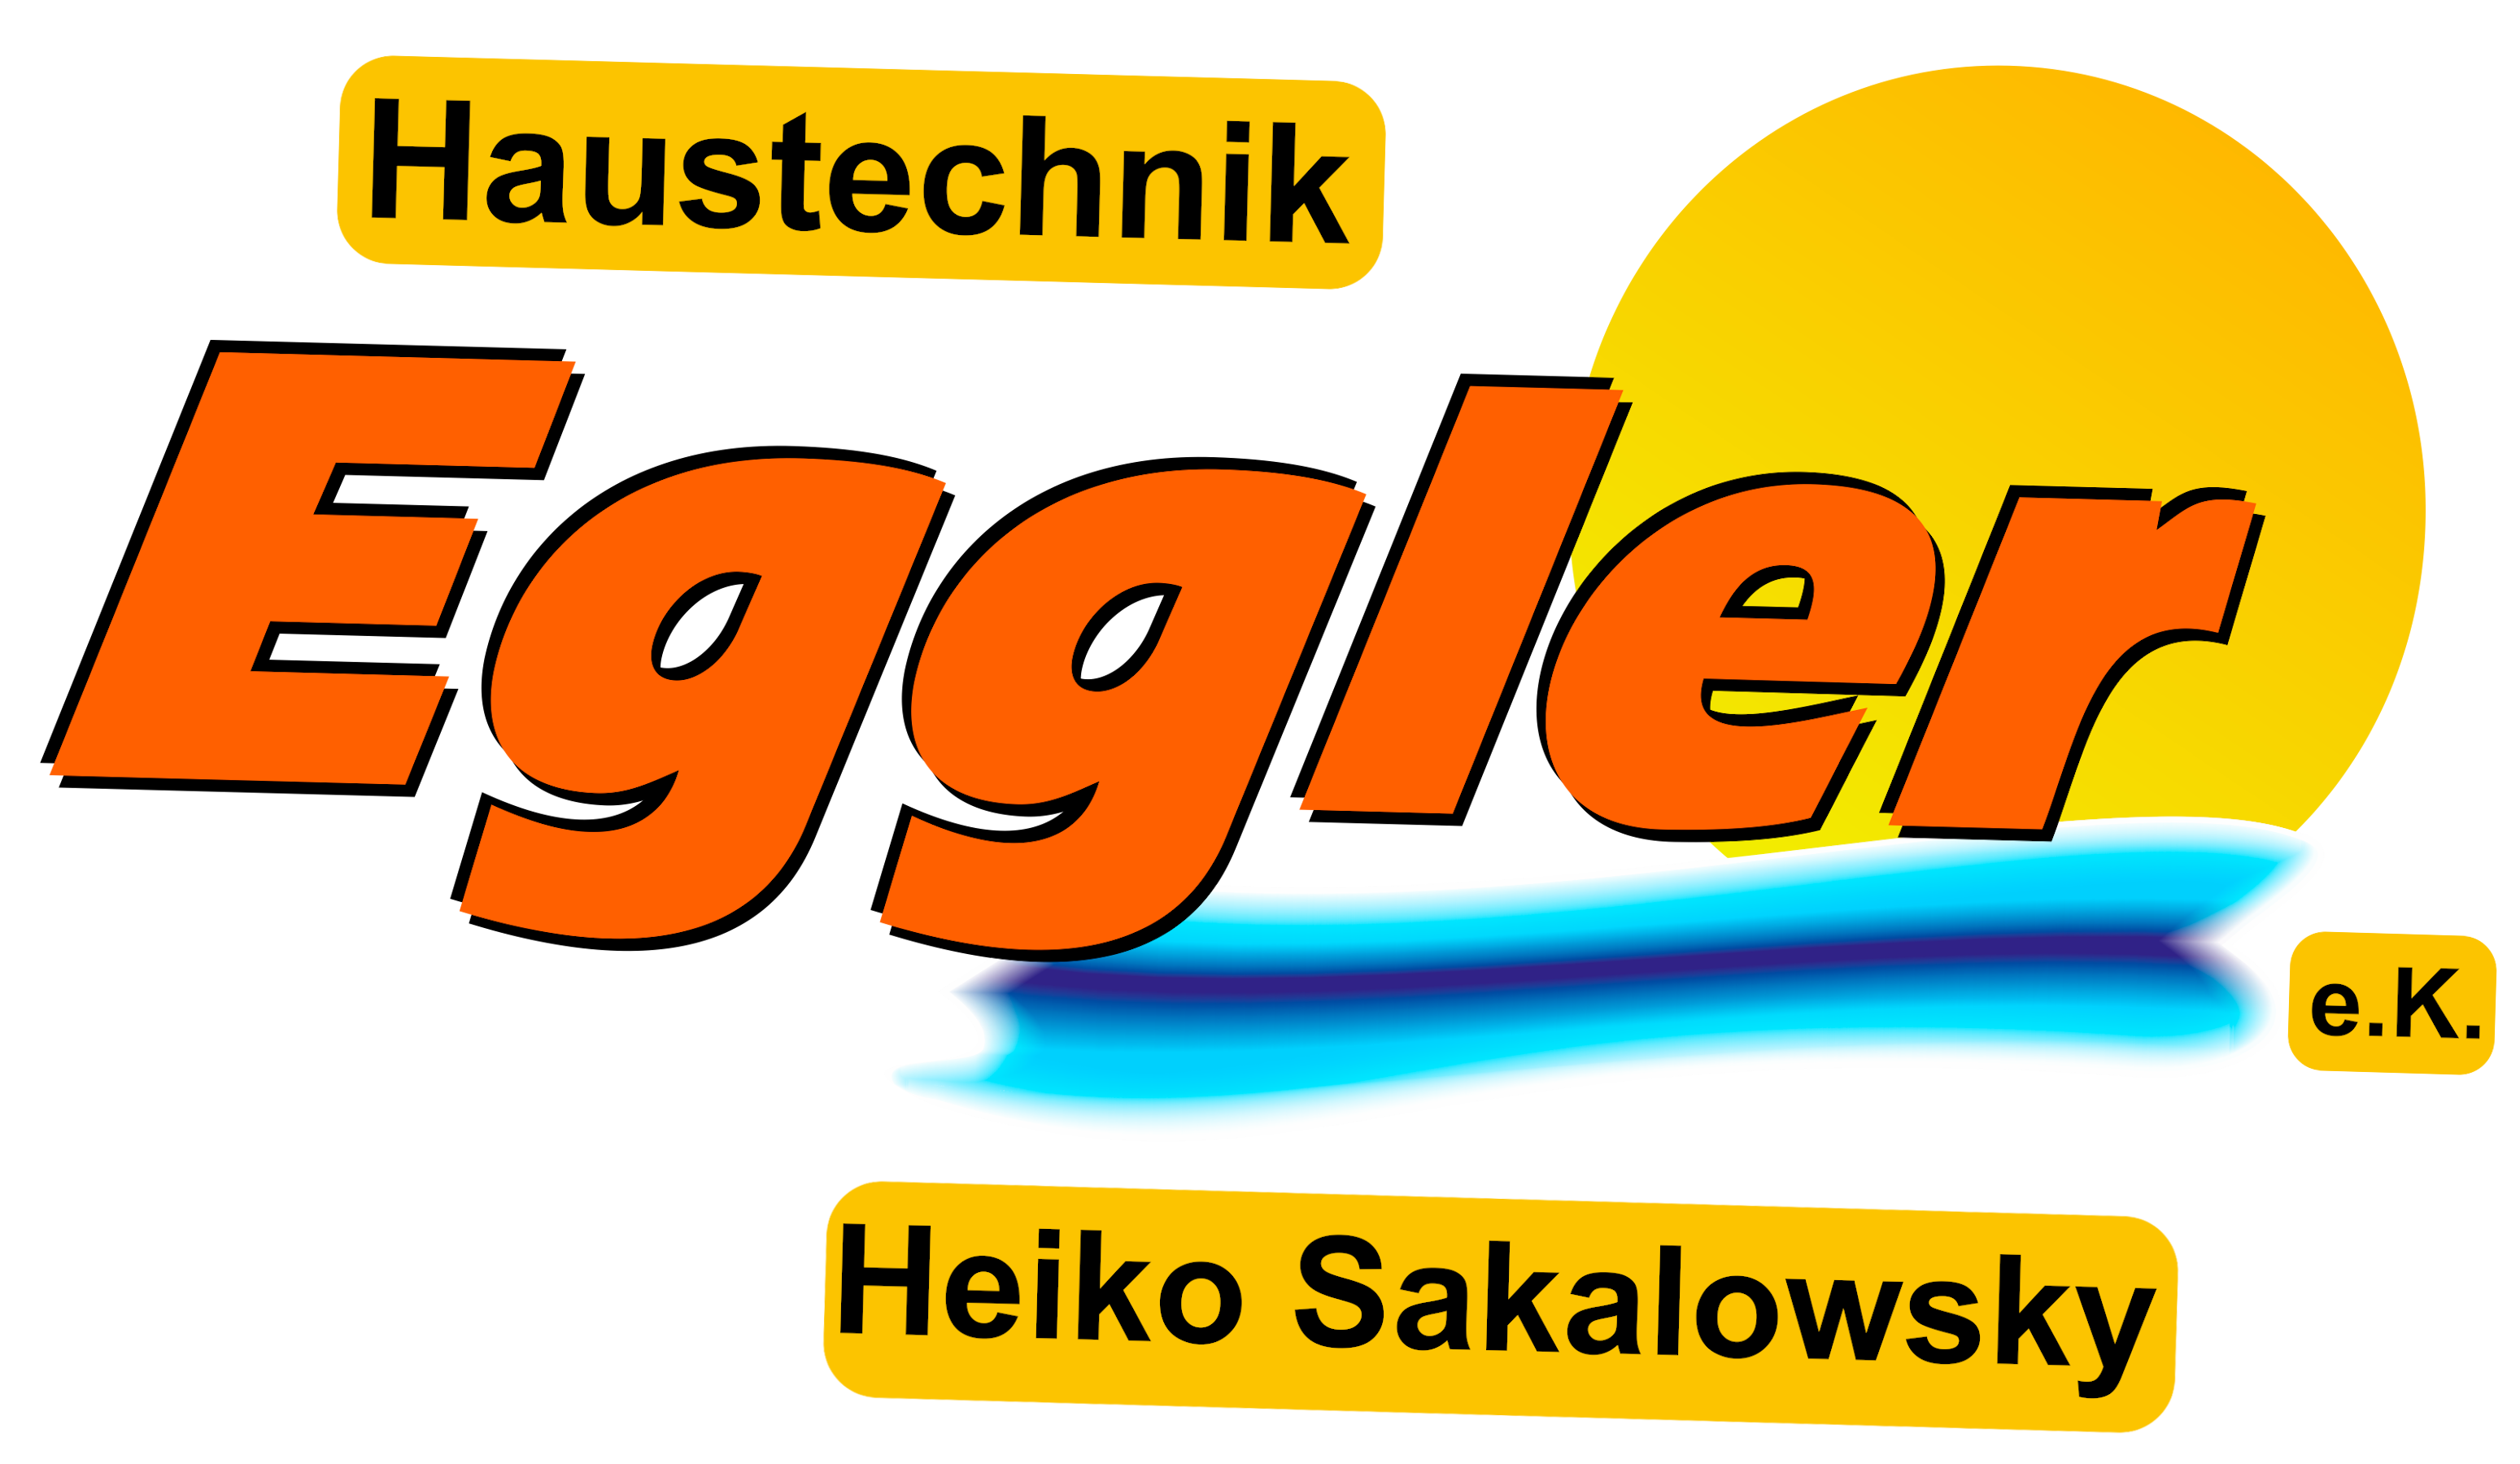 Haustechnik Eggler e.K.